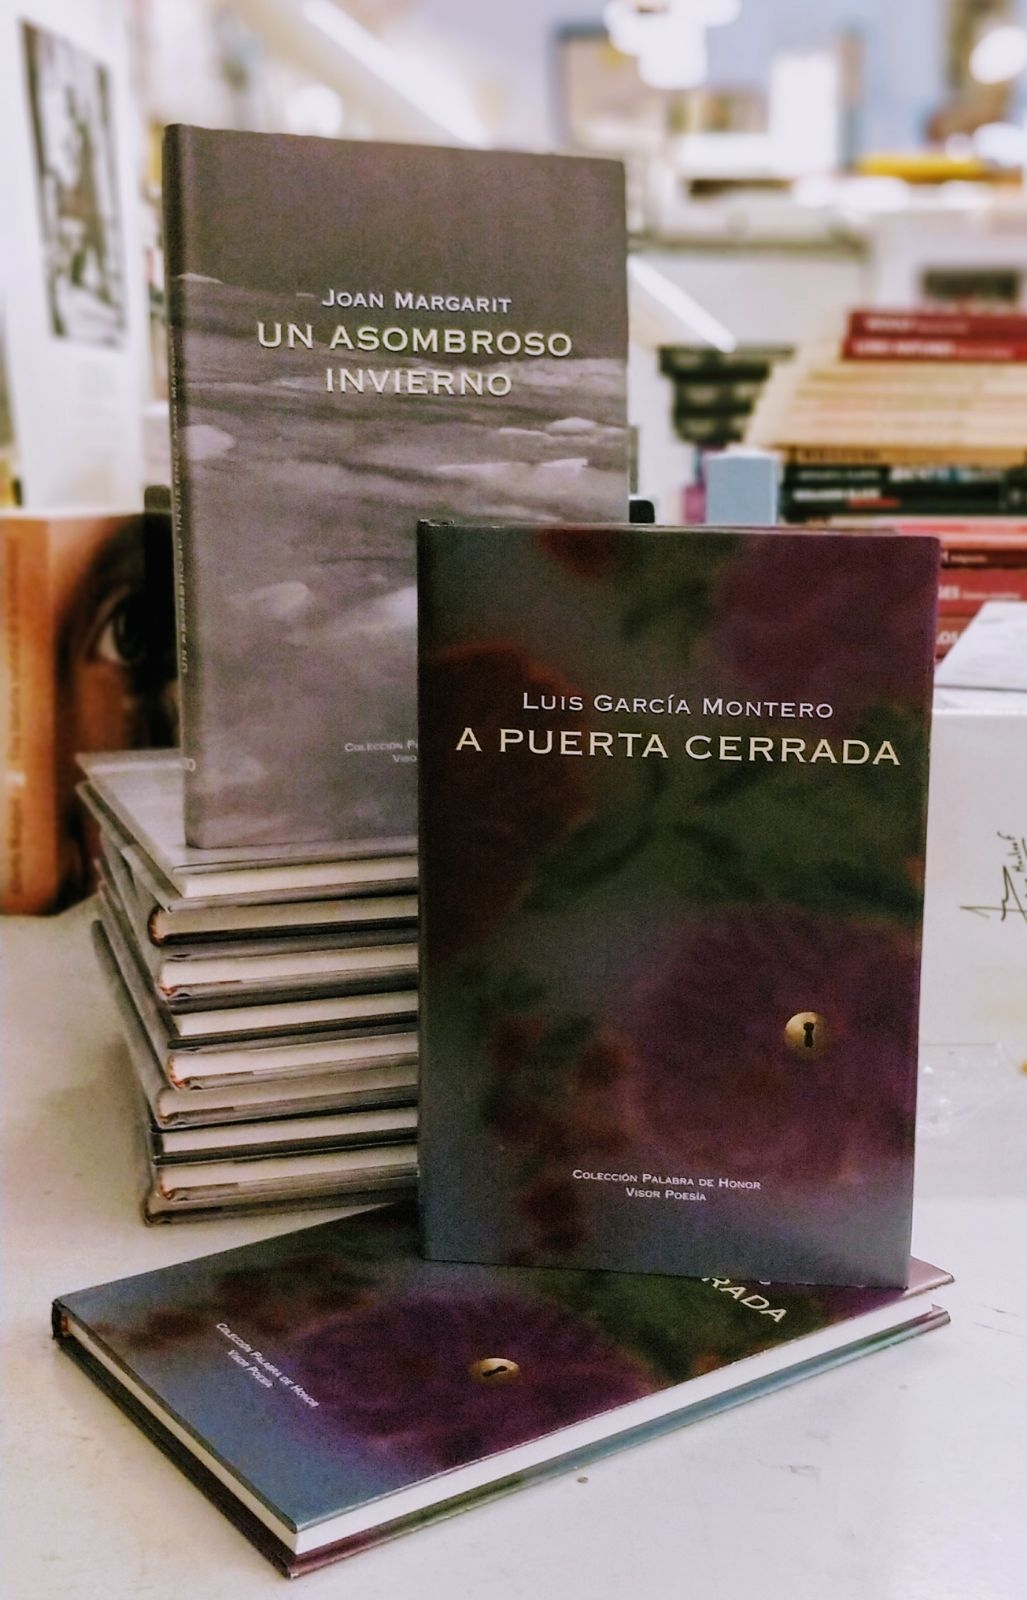 JOAN MARGARIT y LUIS GARCÍA MONTERO. Presentación de sus dos últimos libros de poesía